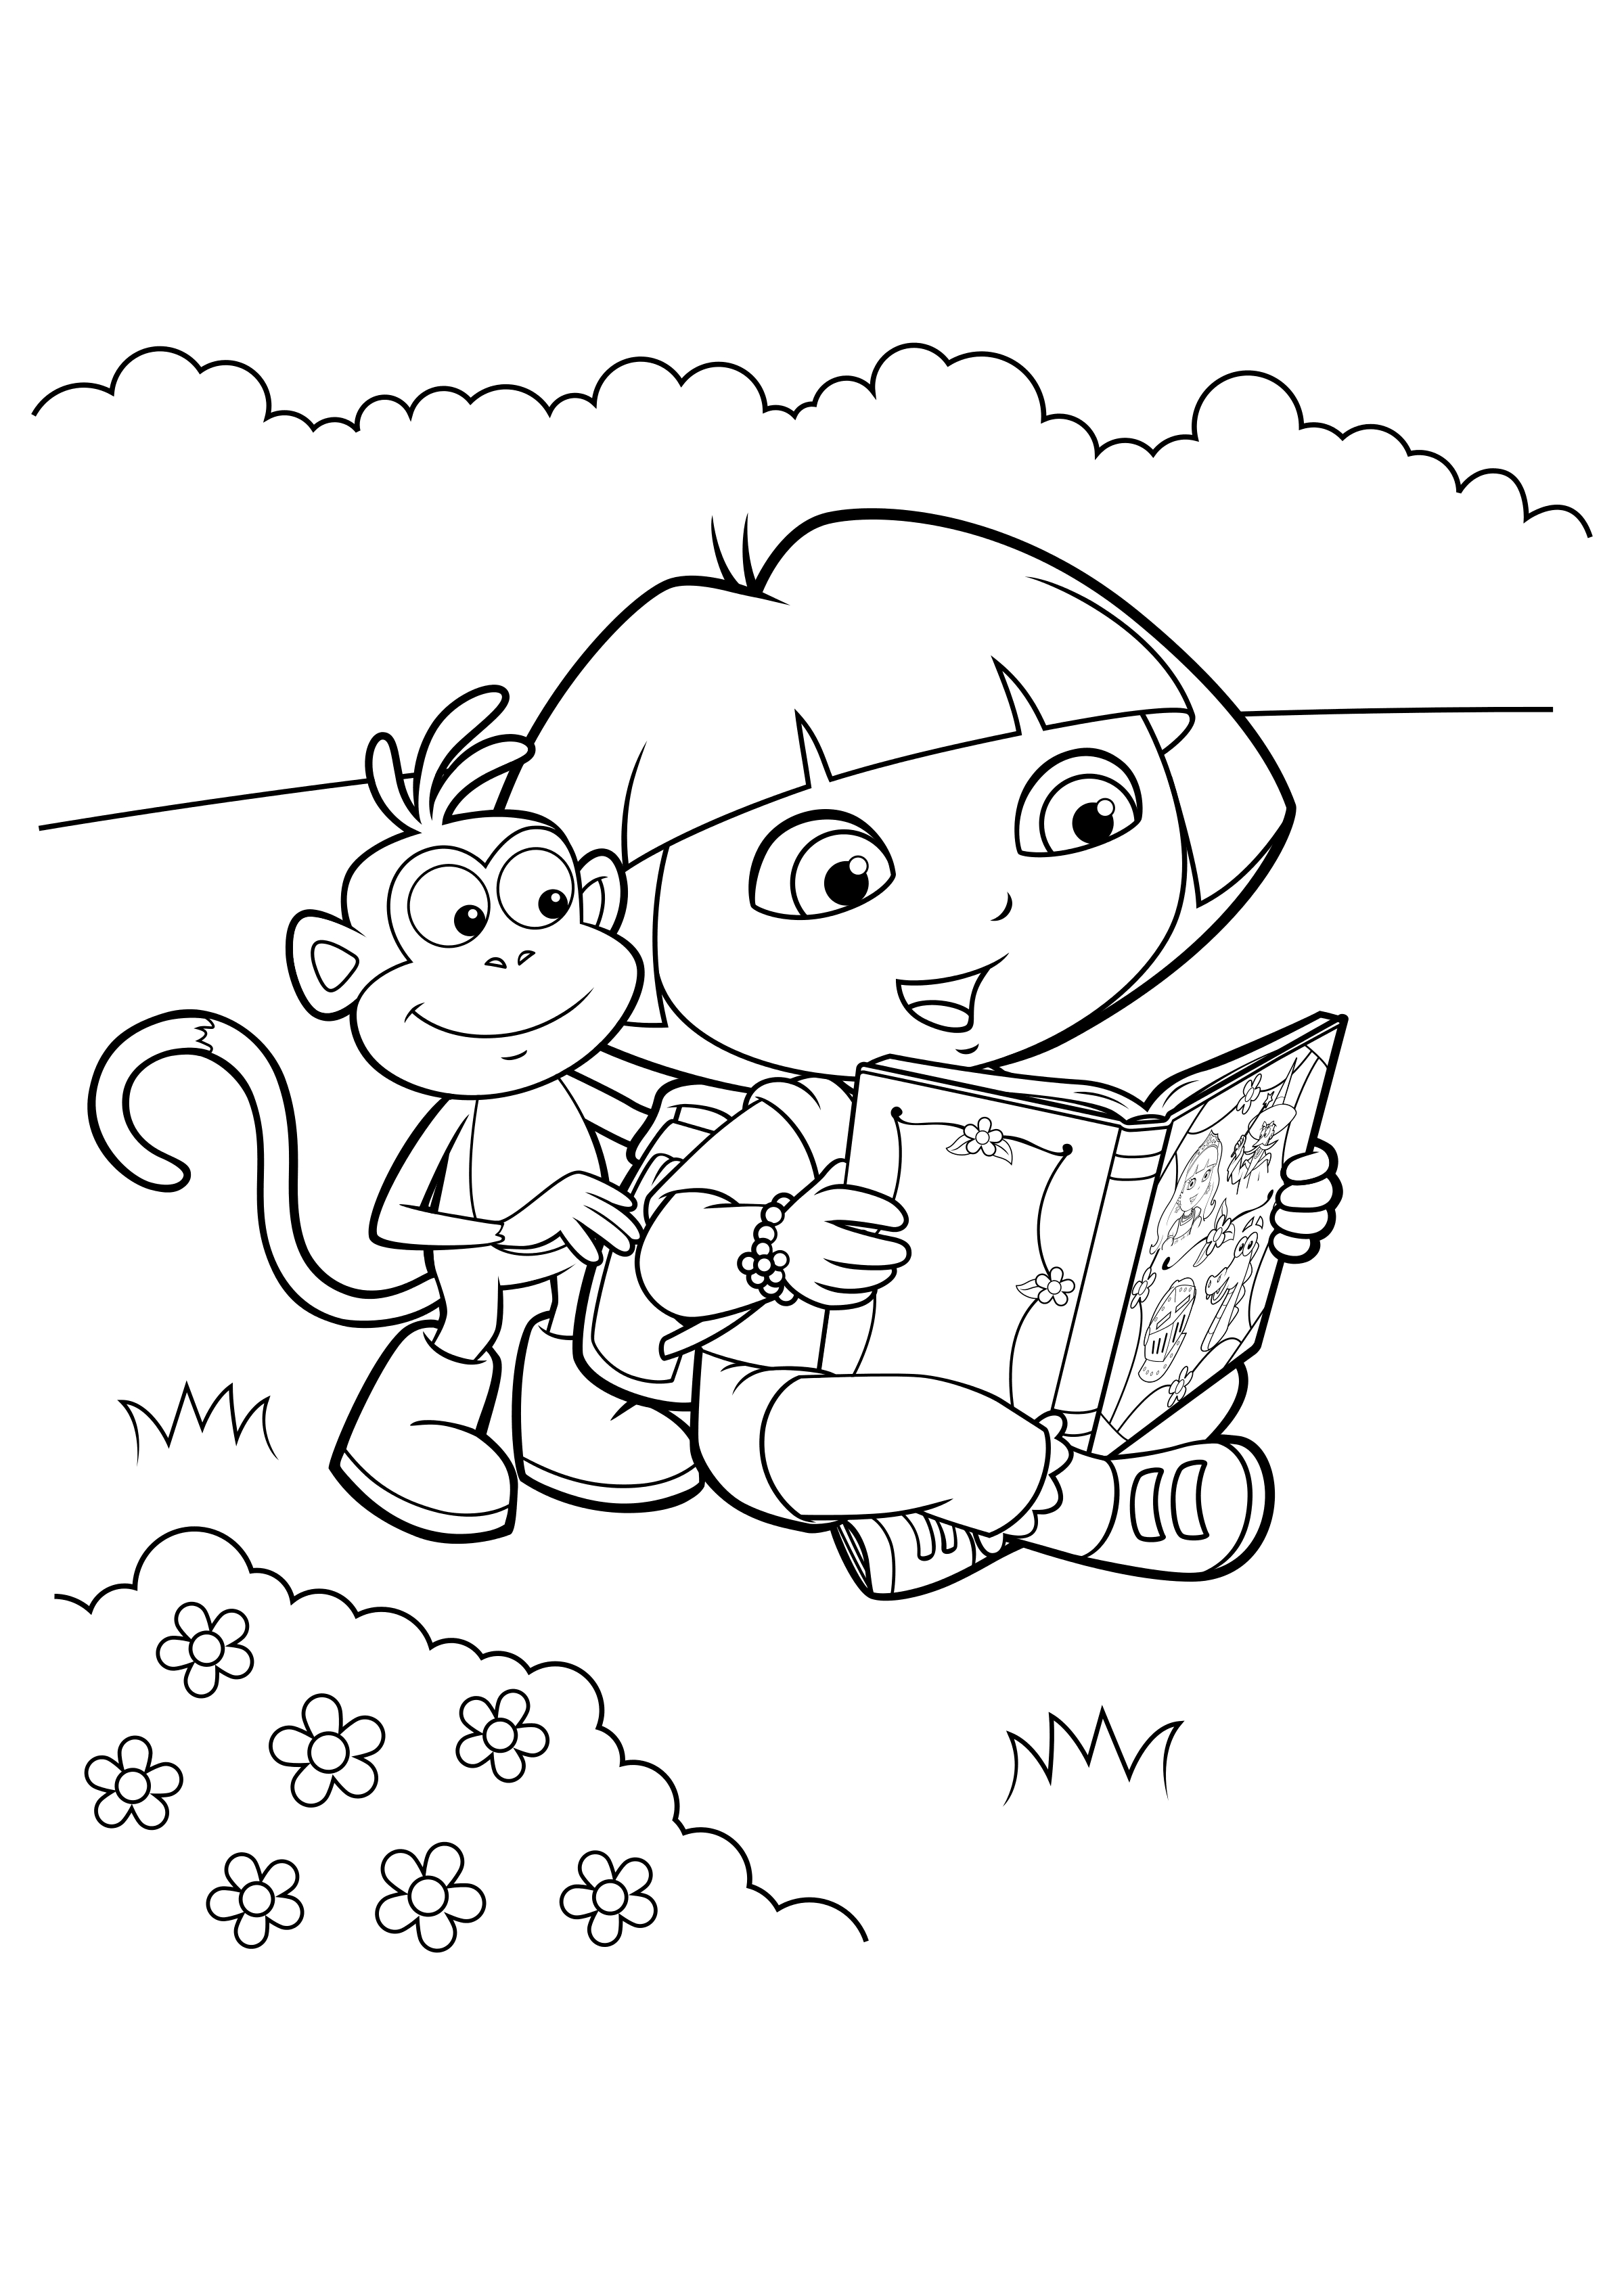 Para Colorear Dora the Explorer Dora y Boots están leyendo un libro